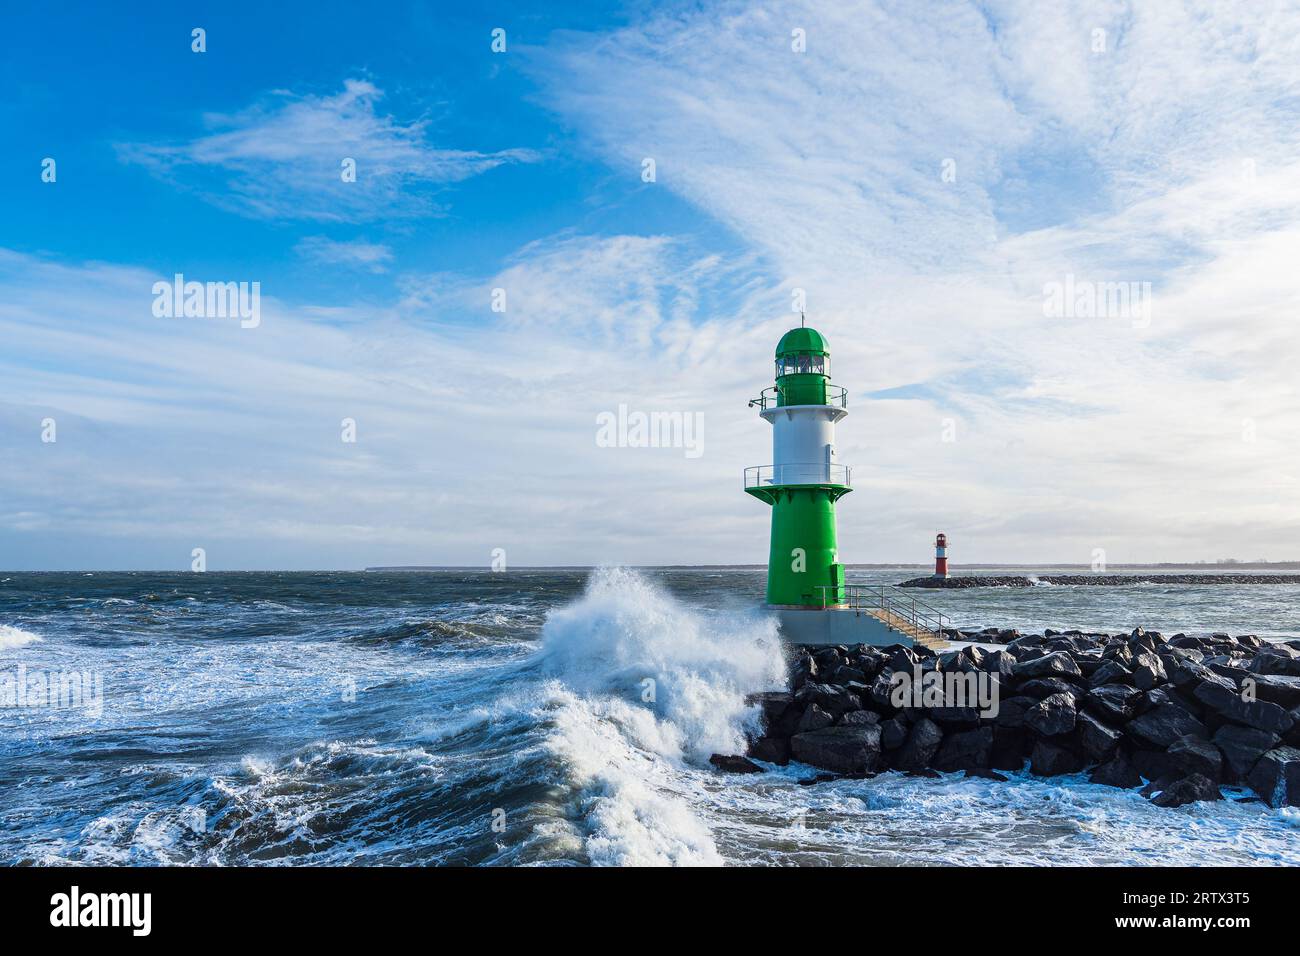 Jetée et vagues sur la rive de la mer Baltique à Warnemuende, Allemagne. Banque D'Images